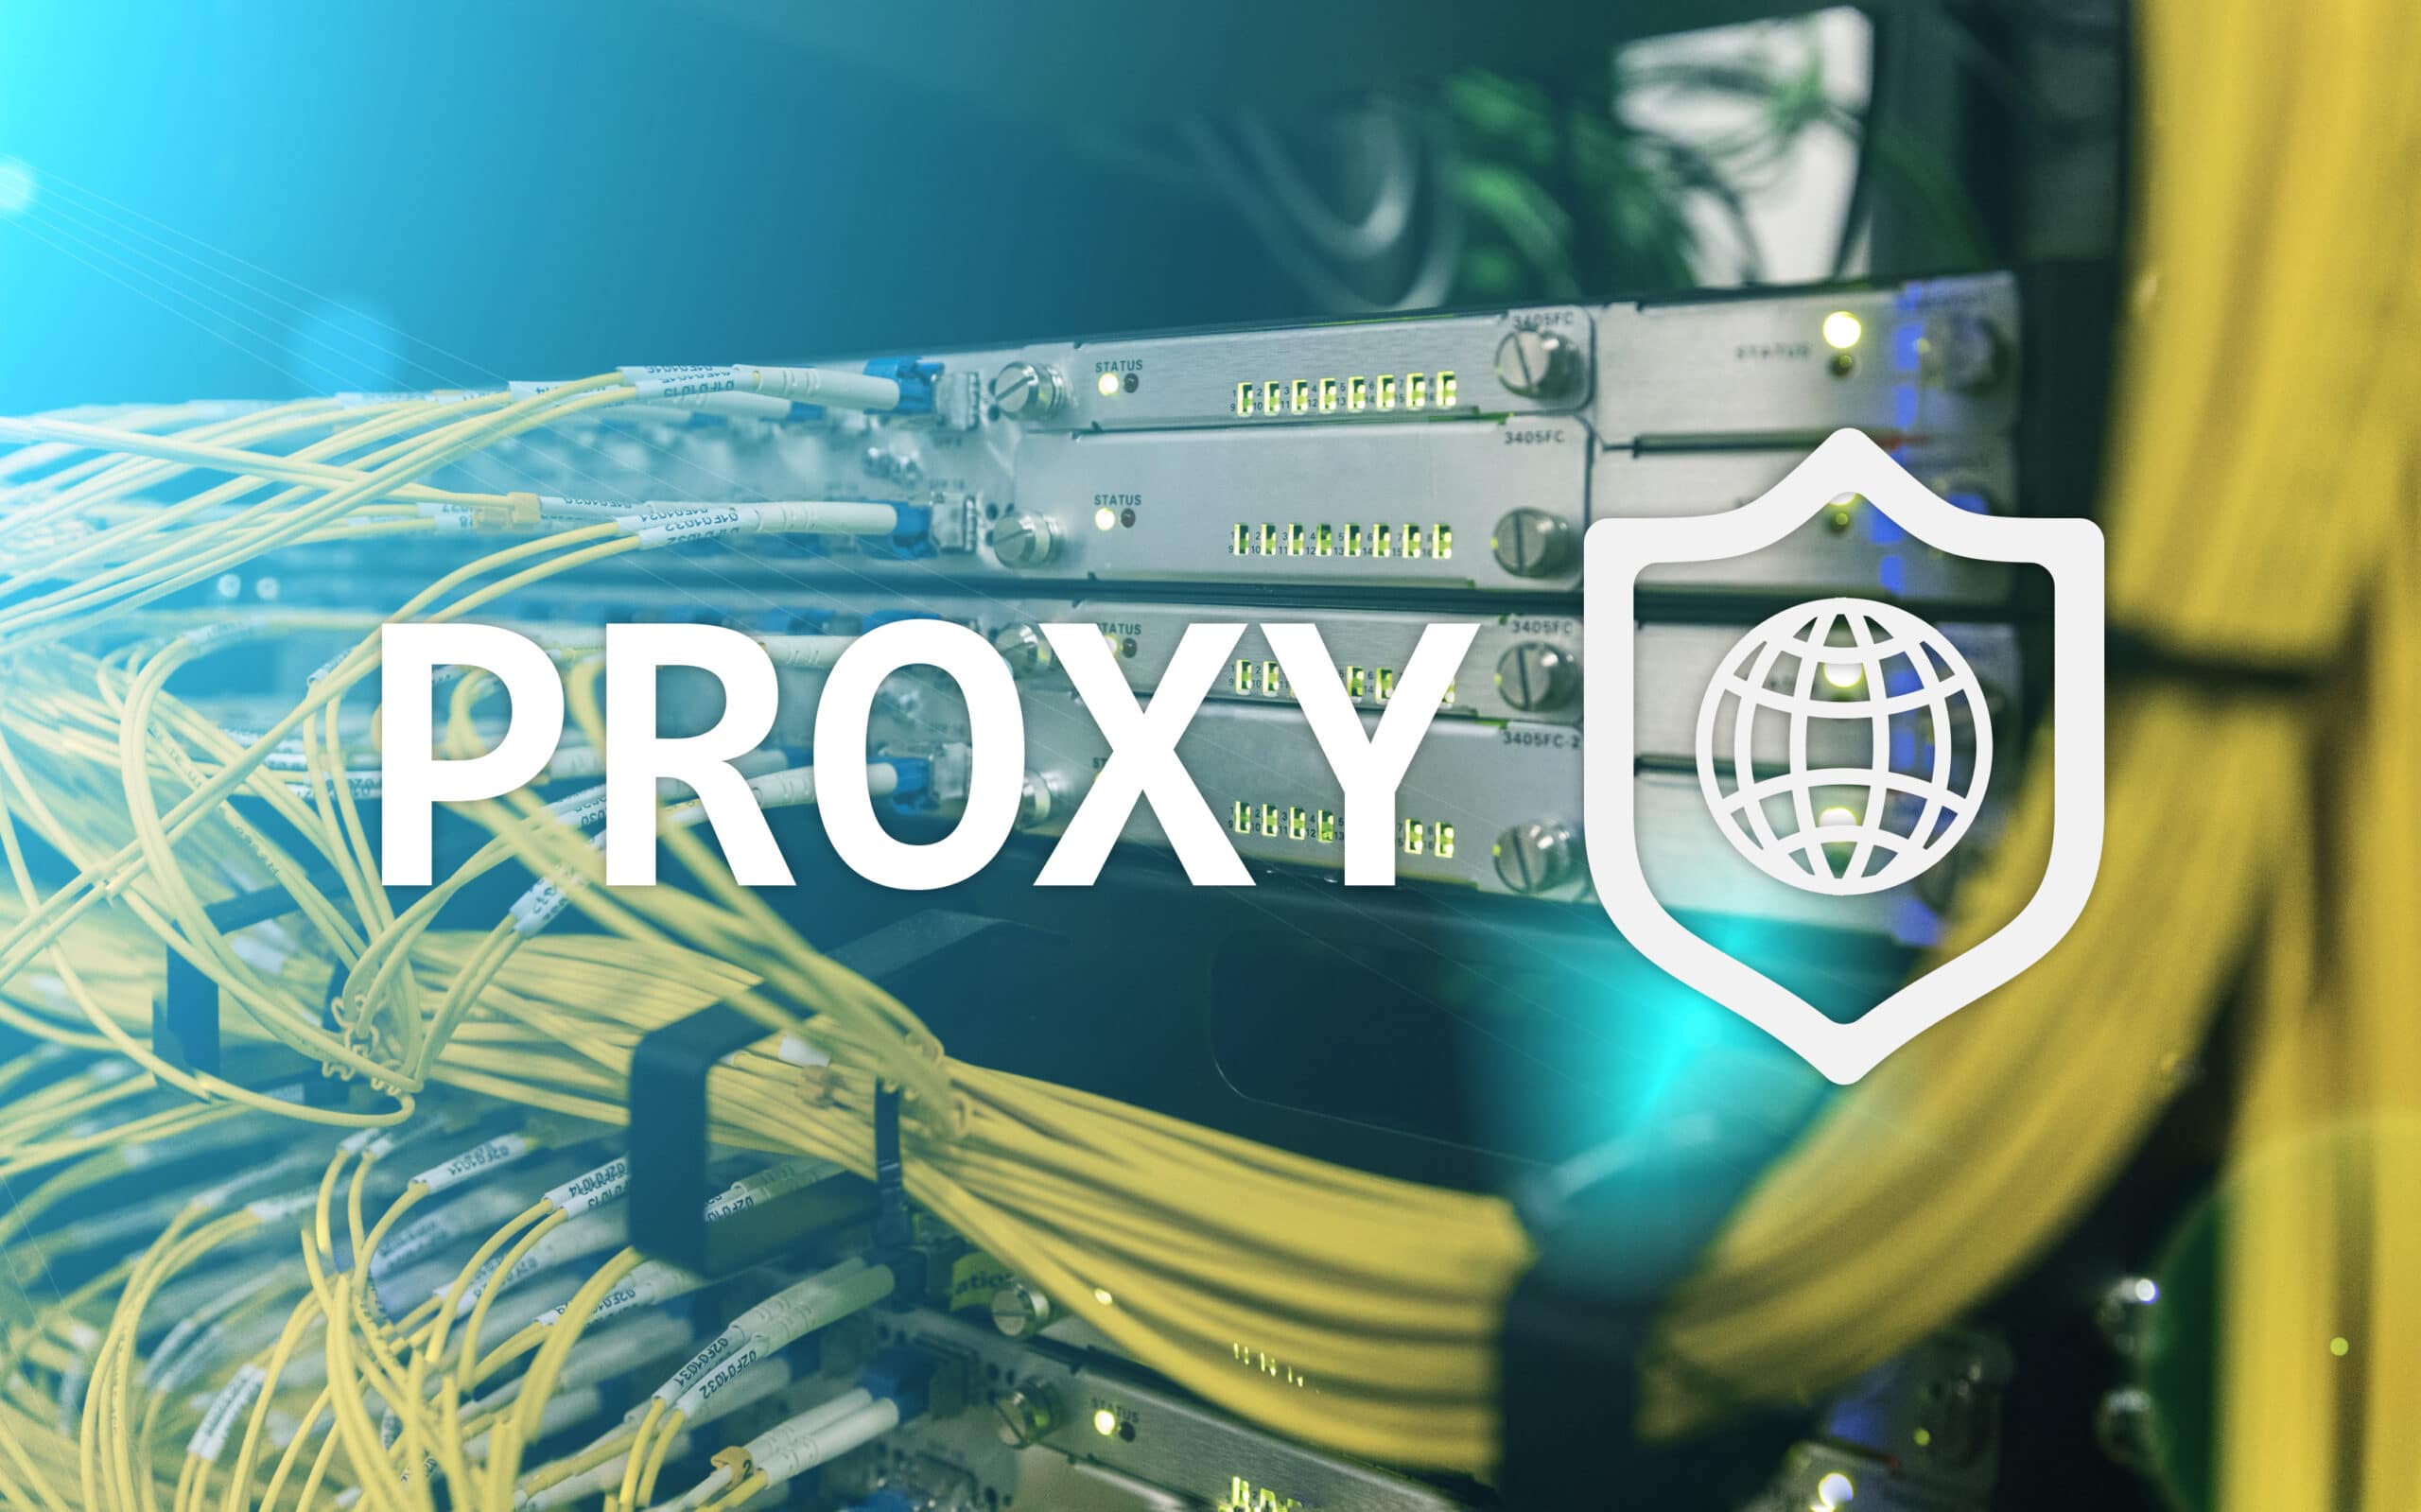 Máy chủ proxy là gì? Tìm hiểu tổng quan về proxy